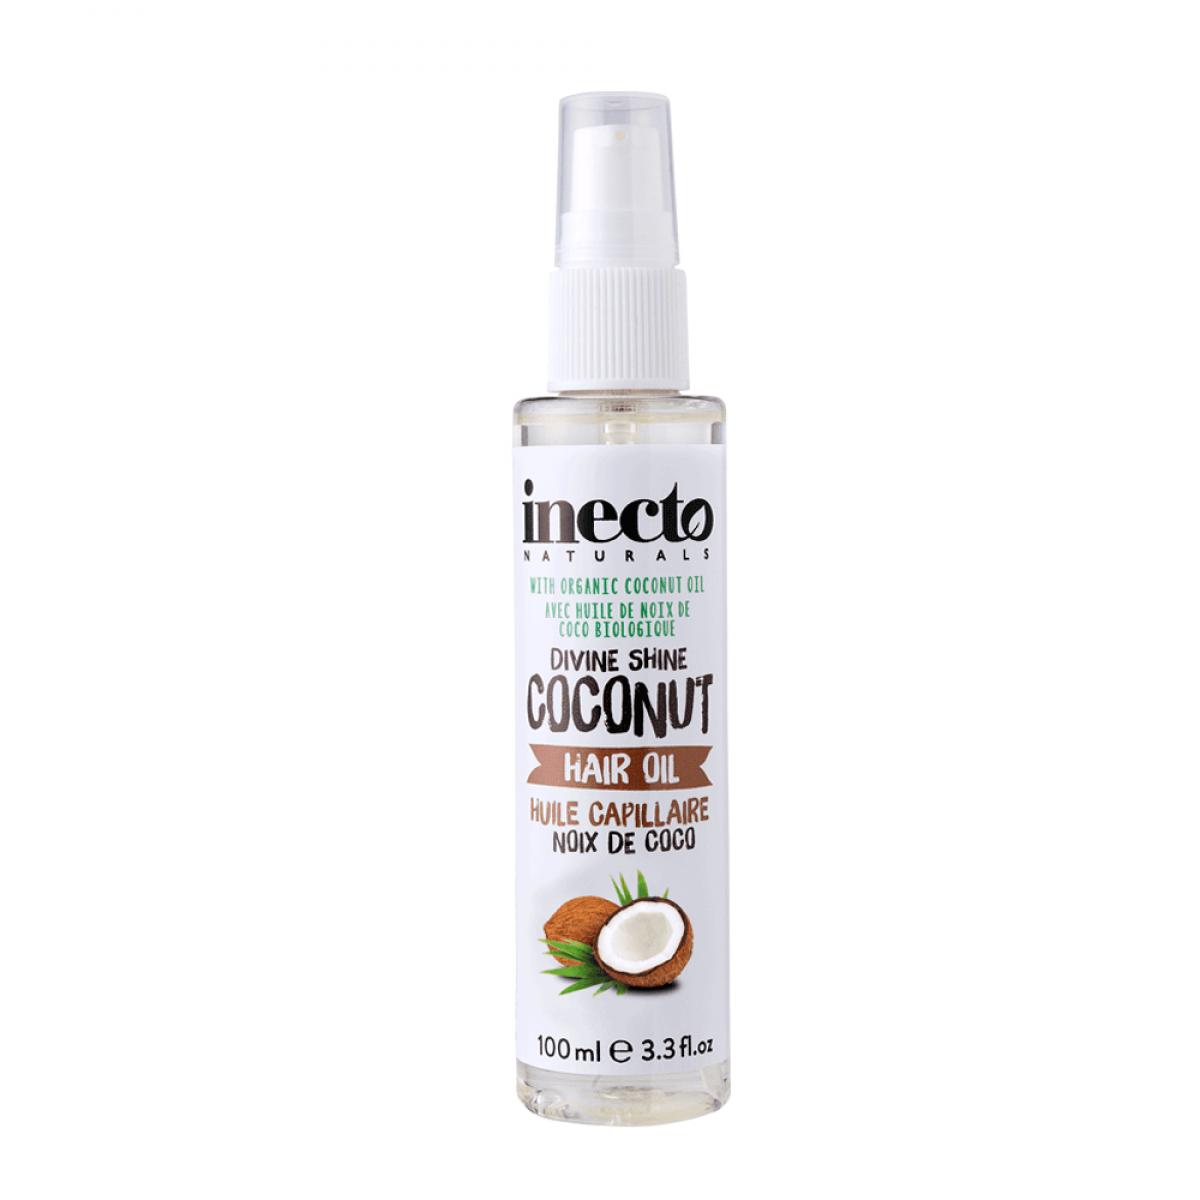 روغن نارگیل مو اورگانیک - coconut hair oil